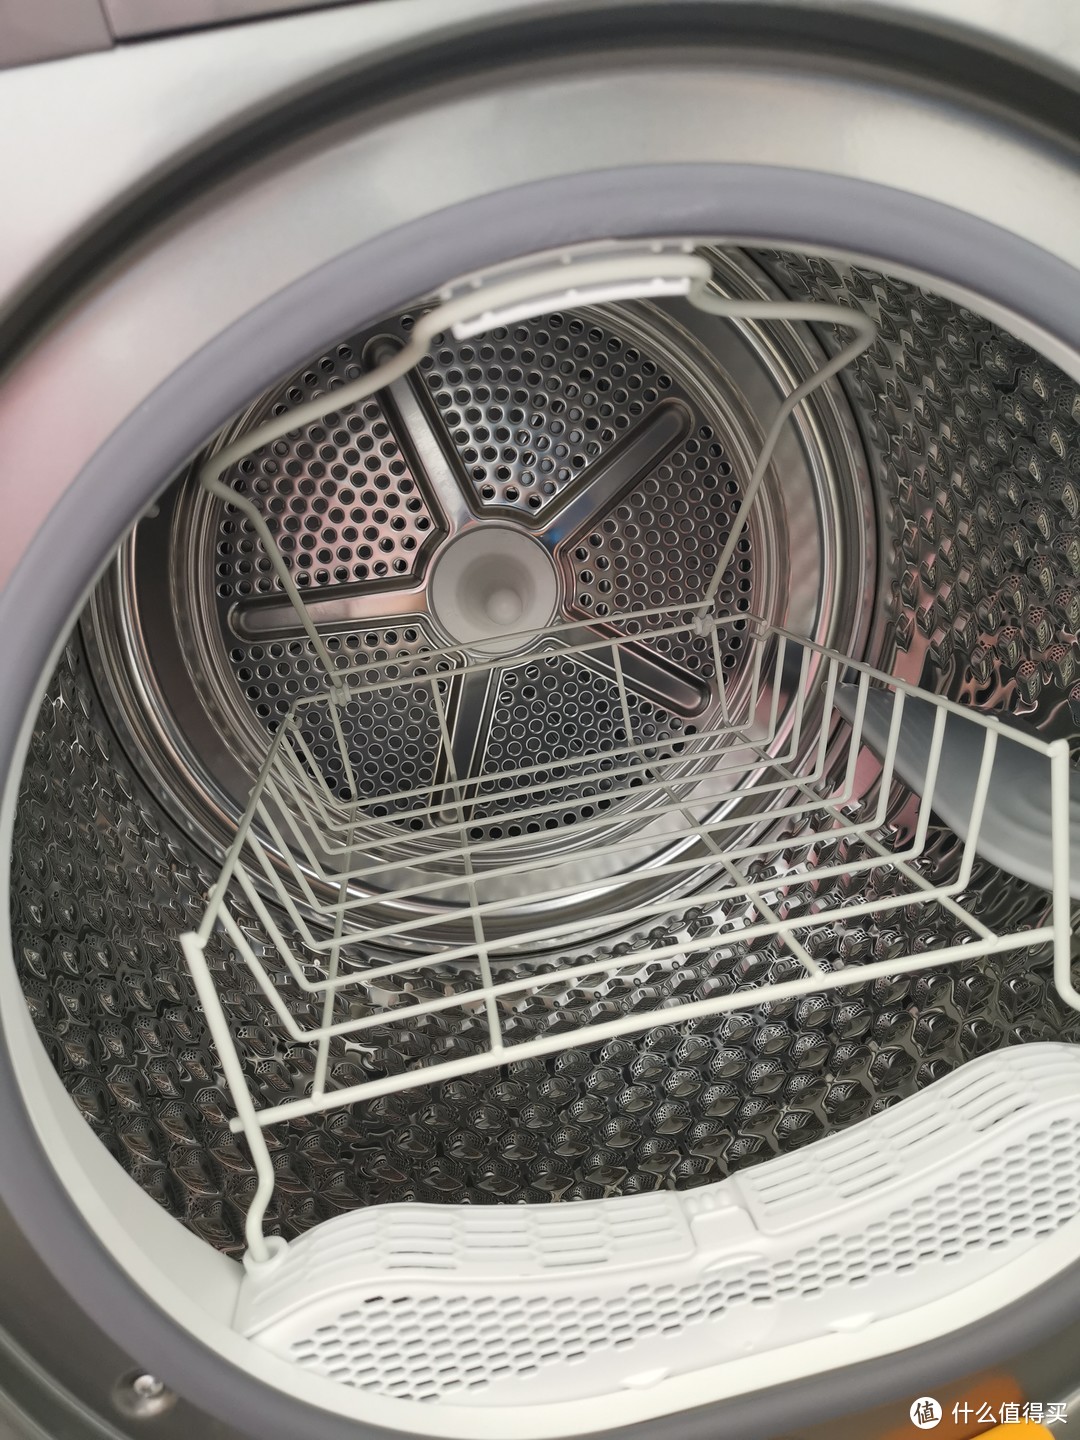 洗衣&干衣机安装全过程记录！